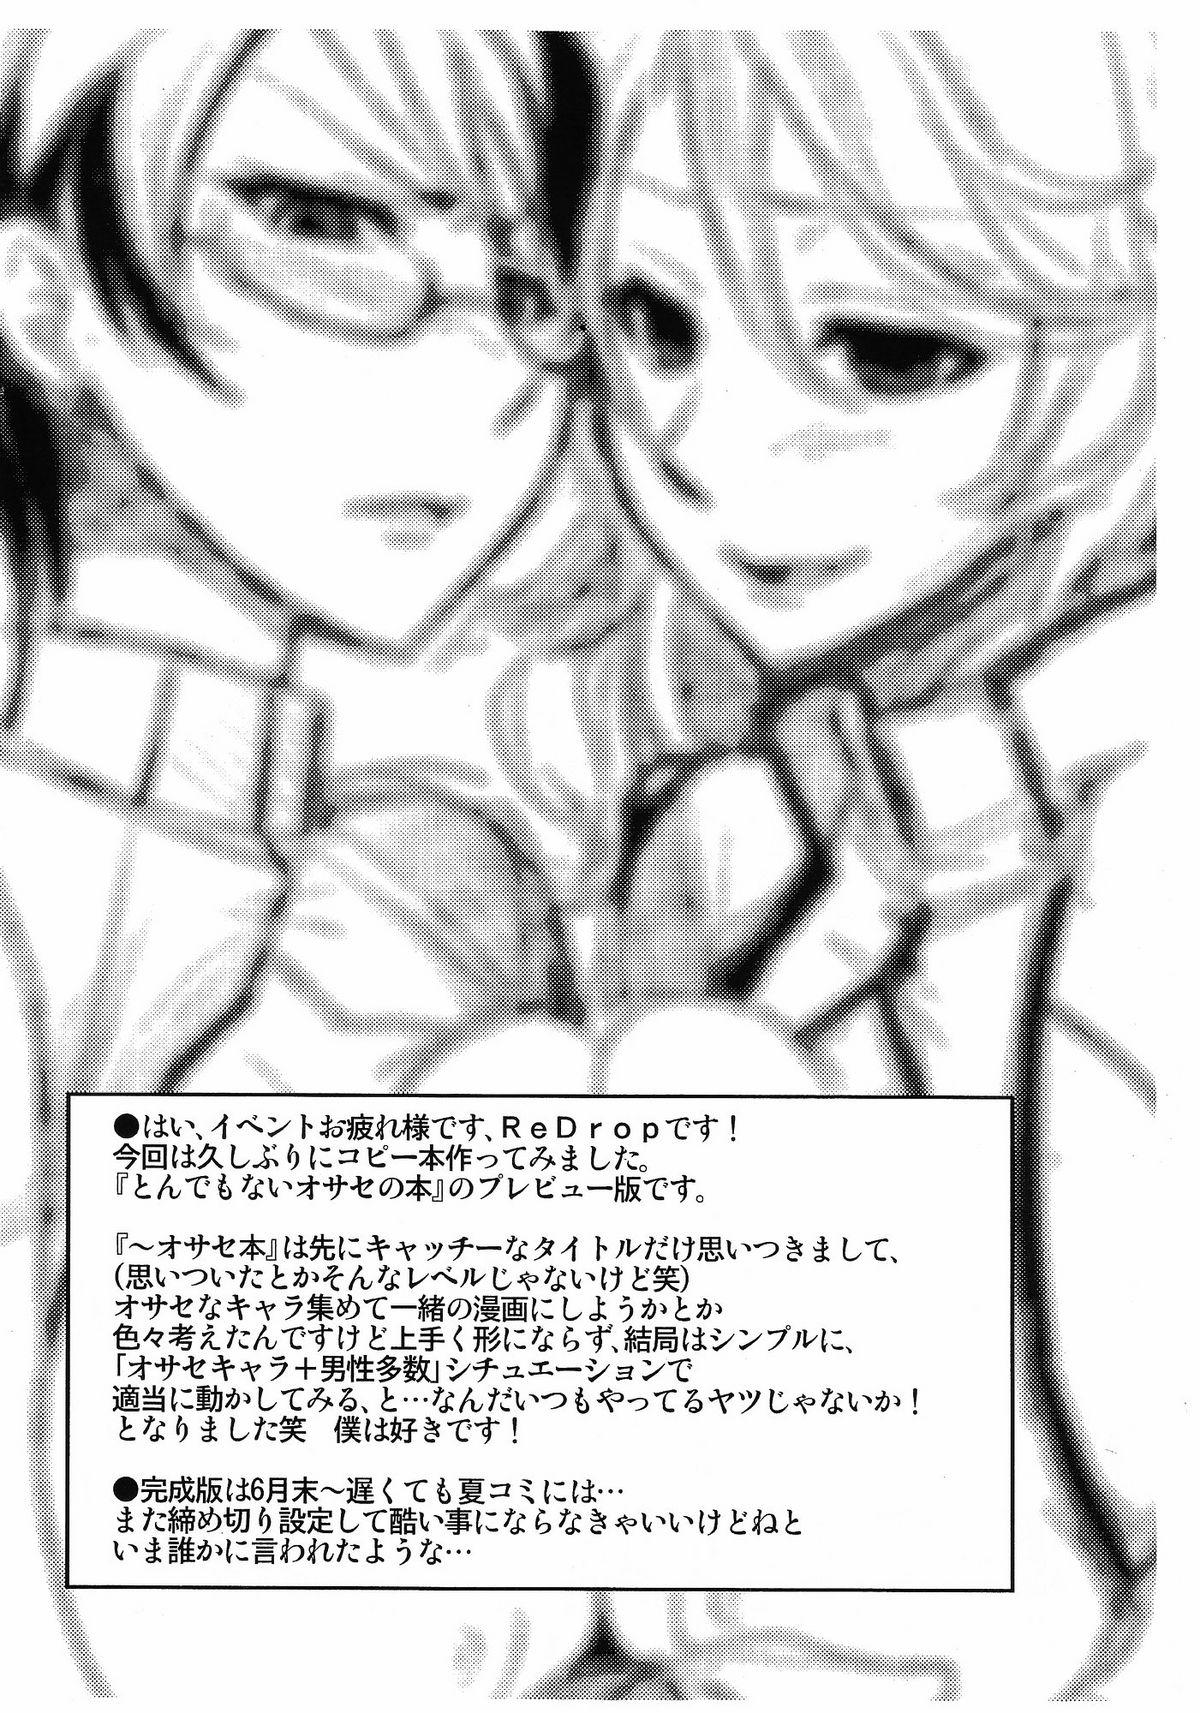 Cheating Tondemonai Osase no Hon PREVIEW Ban - Gundam 00 Ftv Girls - Page 2